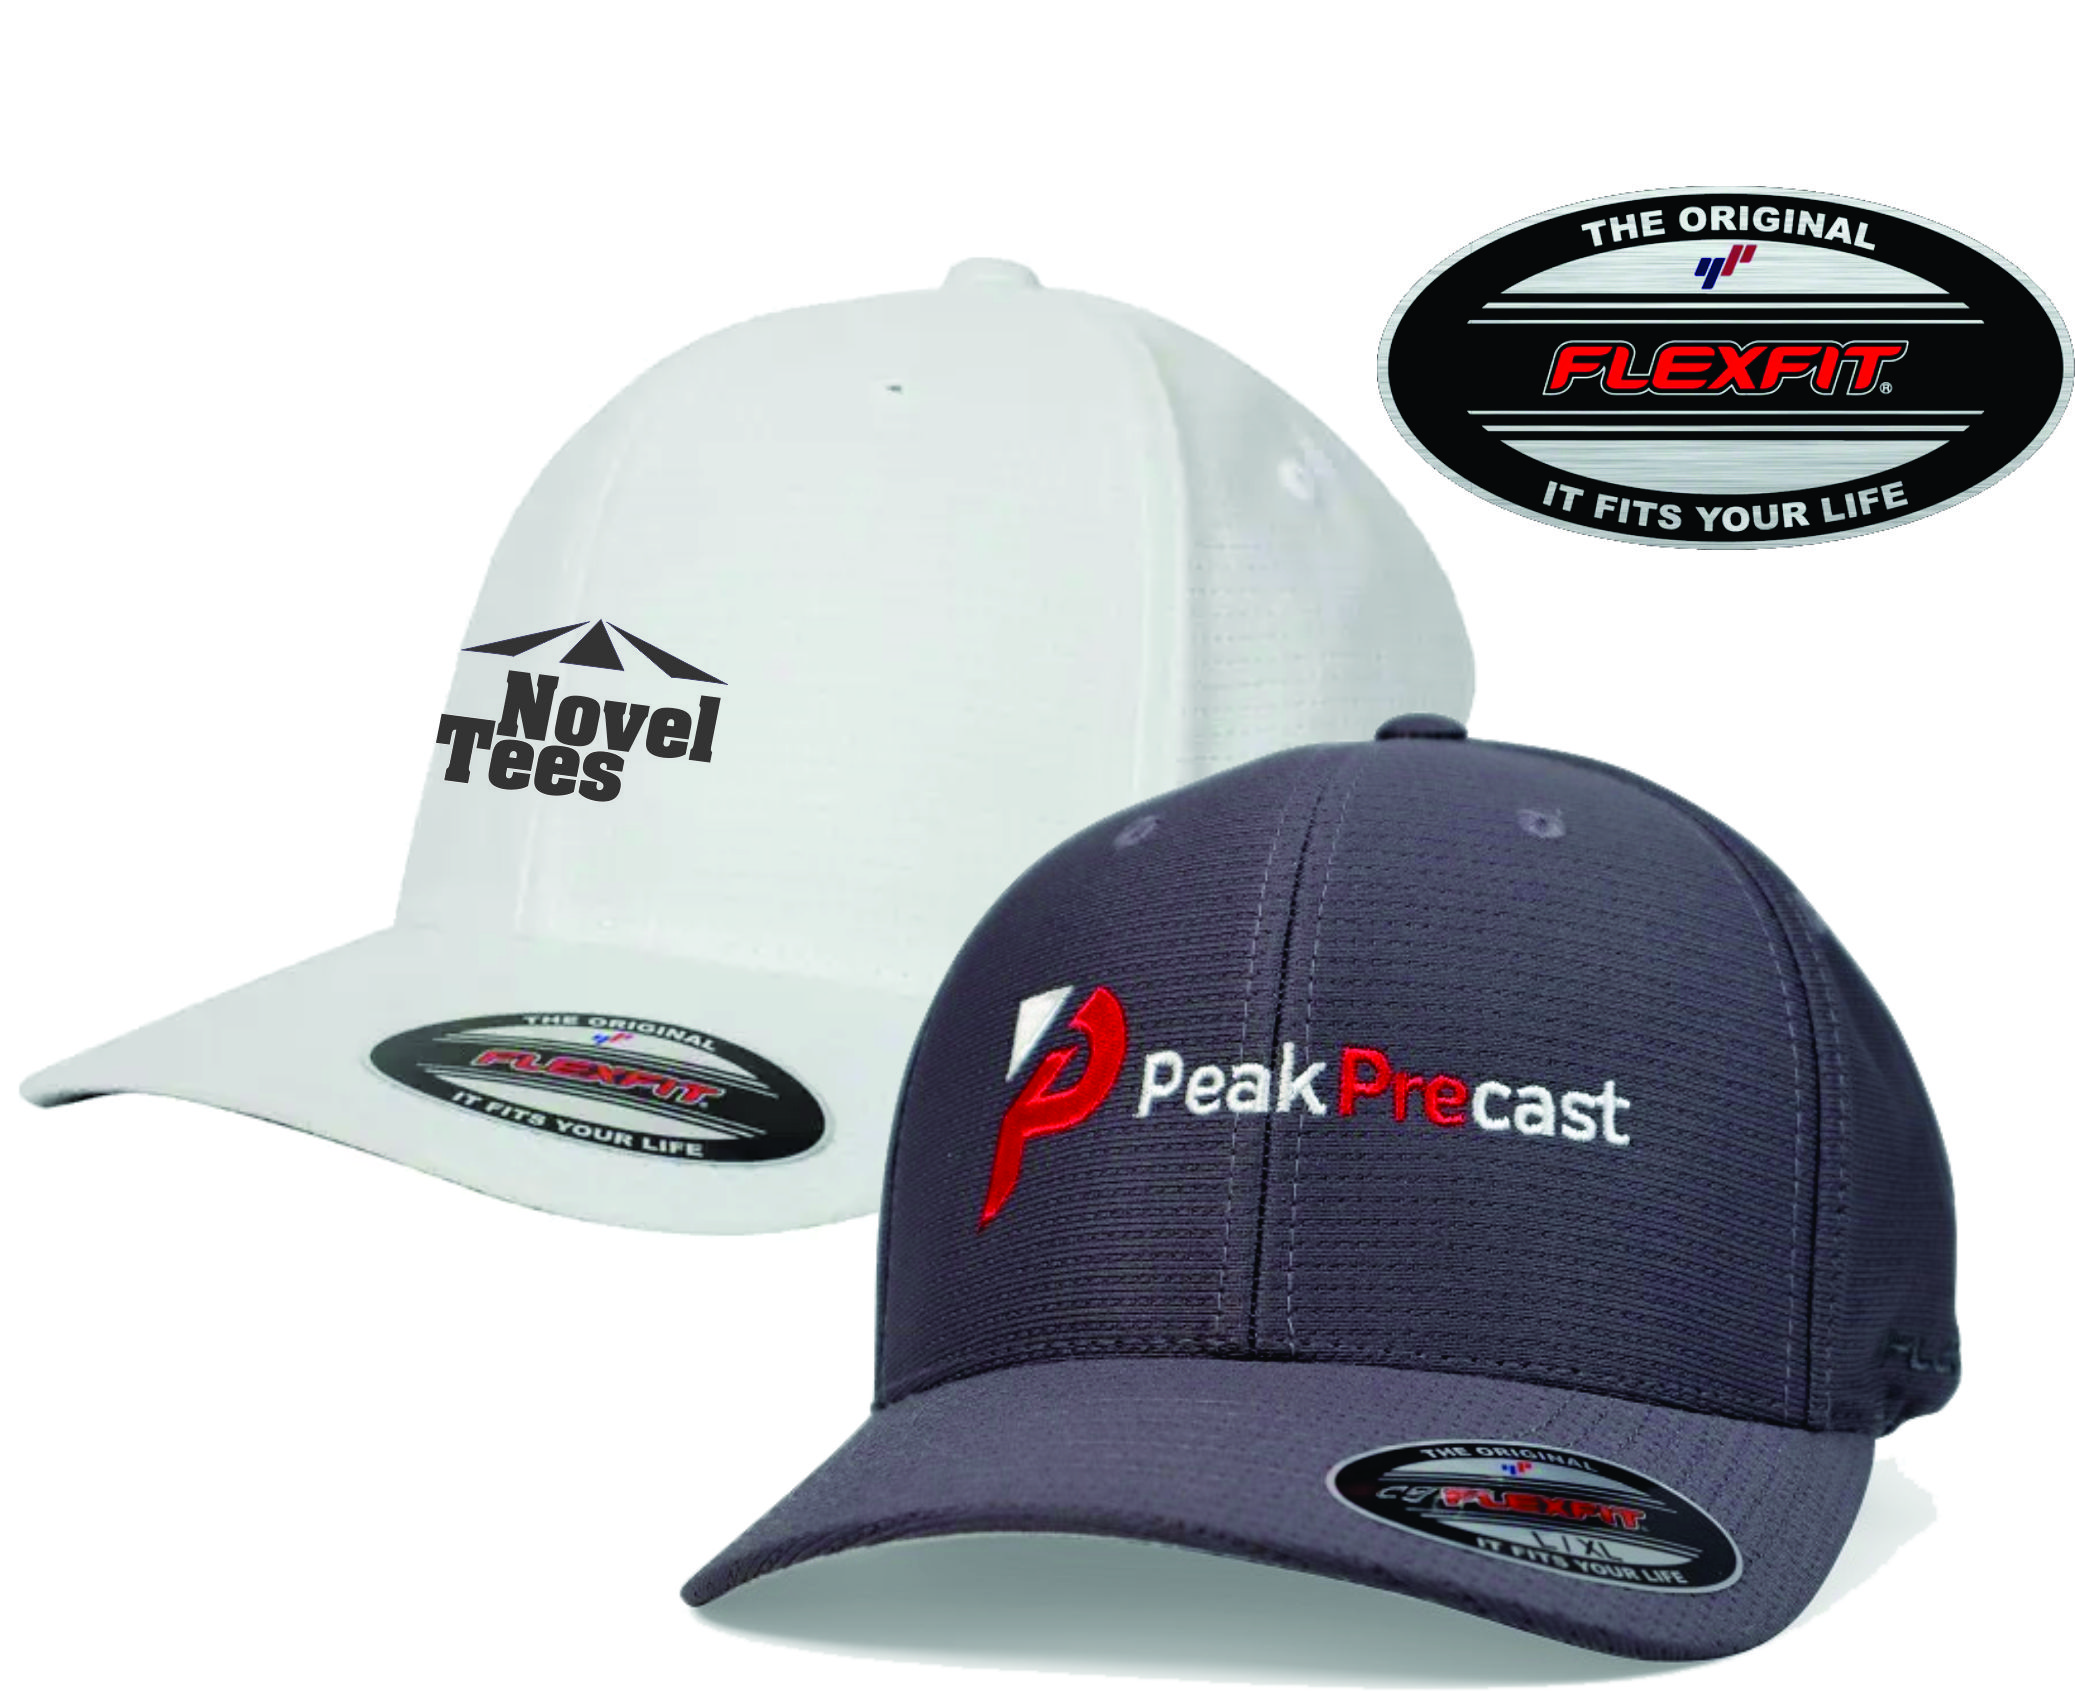 Promotional Flexfit Caps